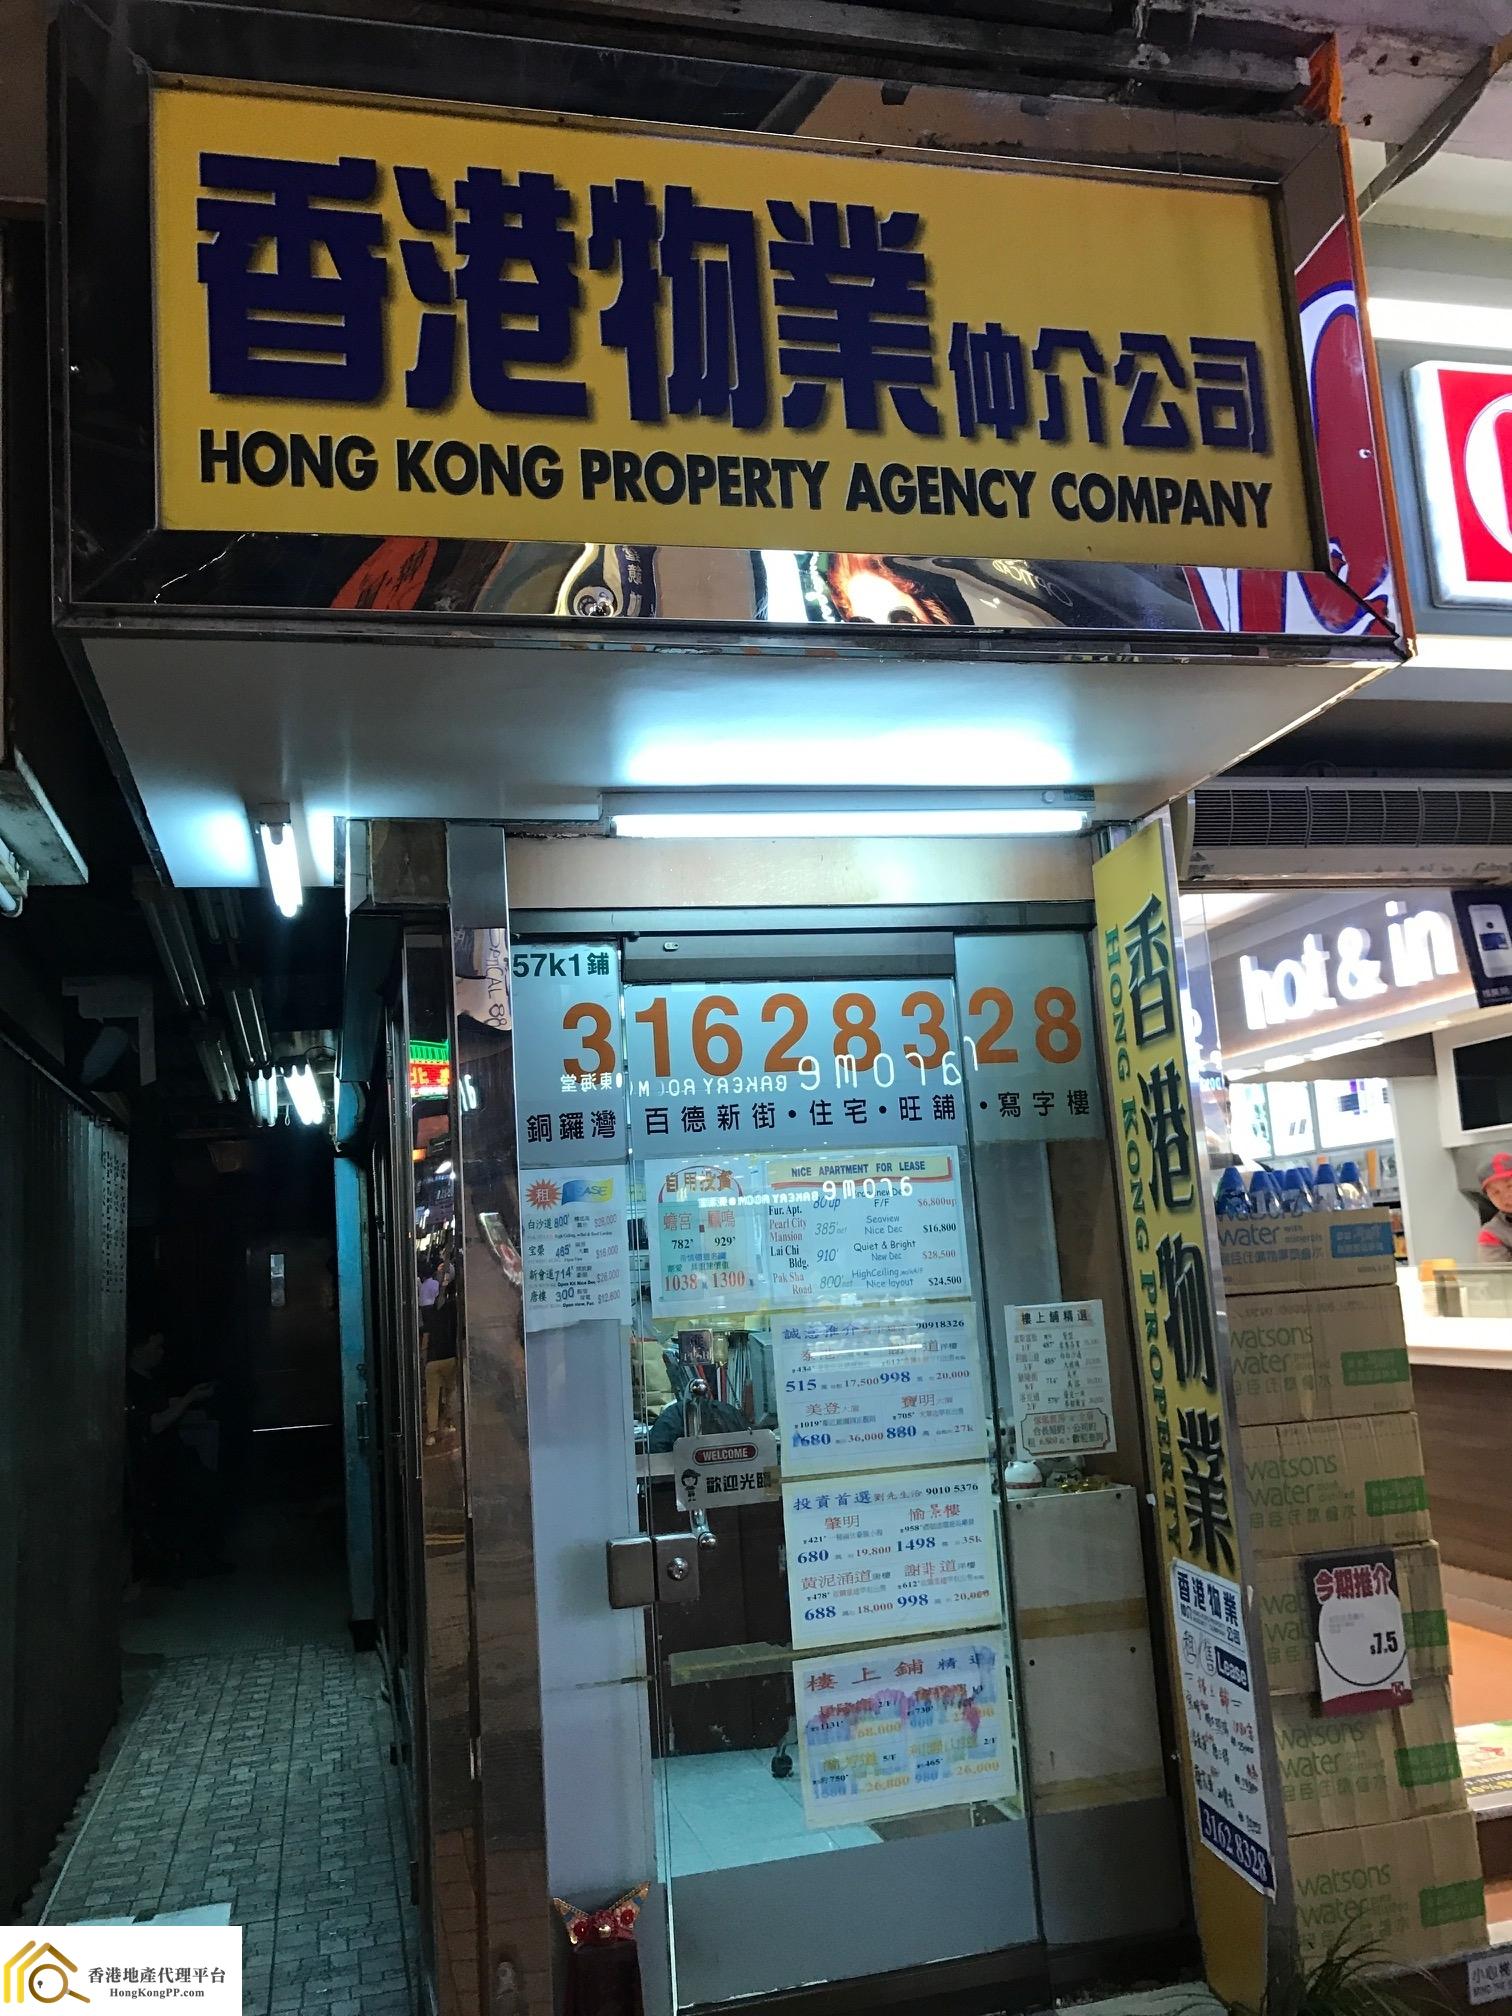 車位地產代理: 香港物業仲介 Hong Kong Property Agency